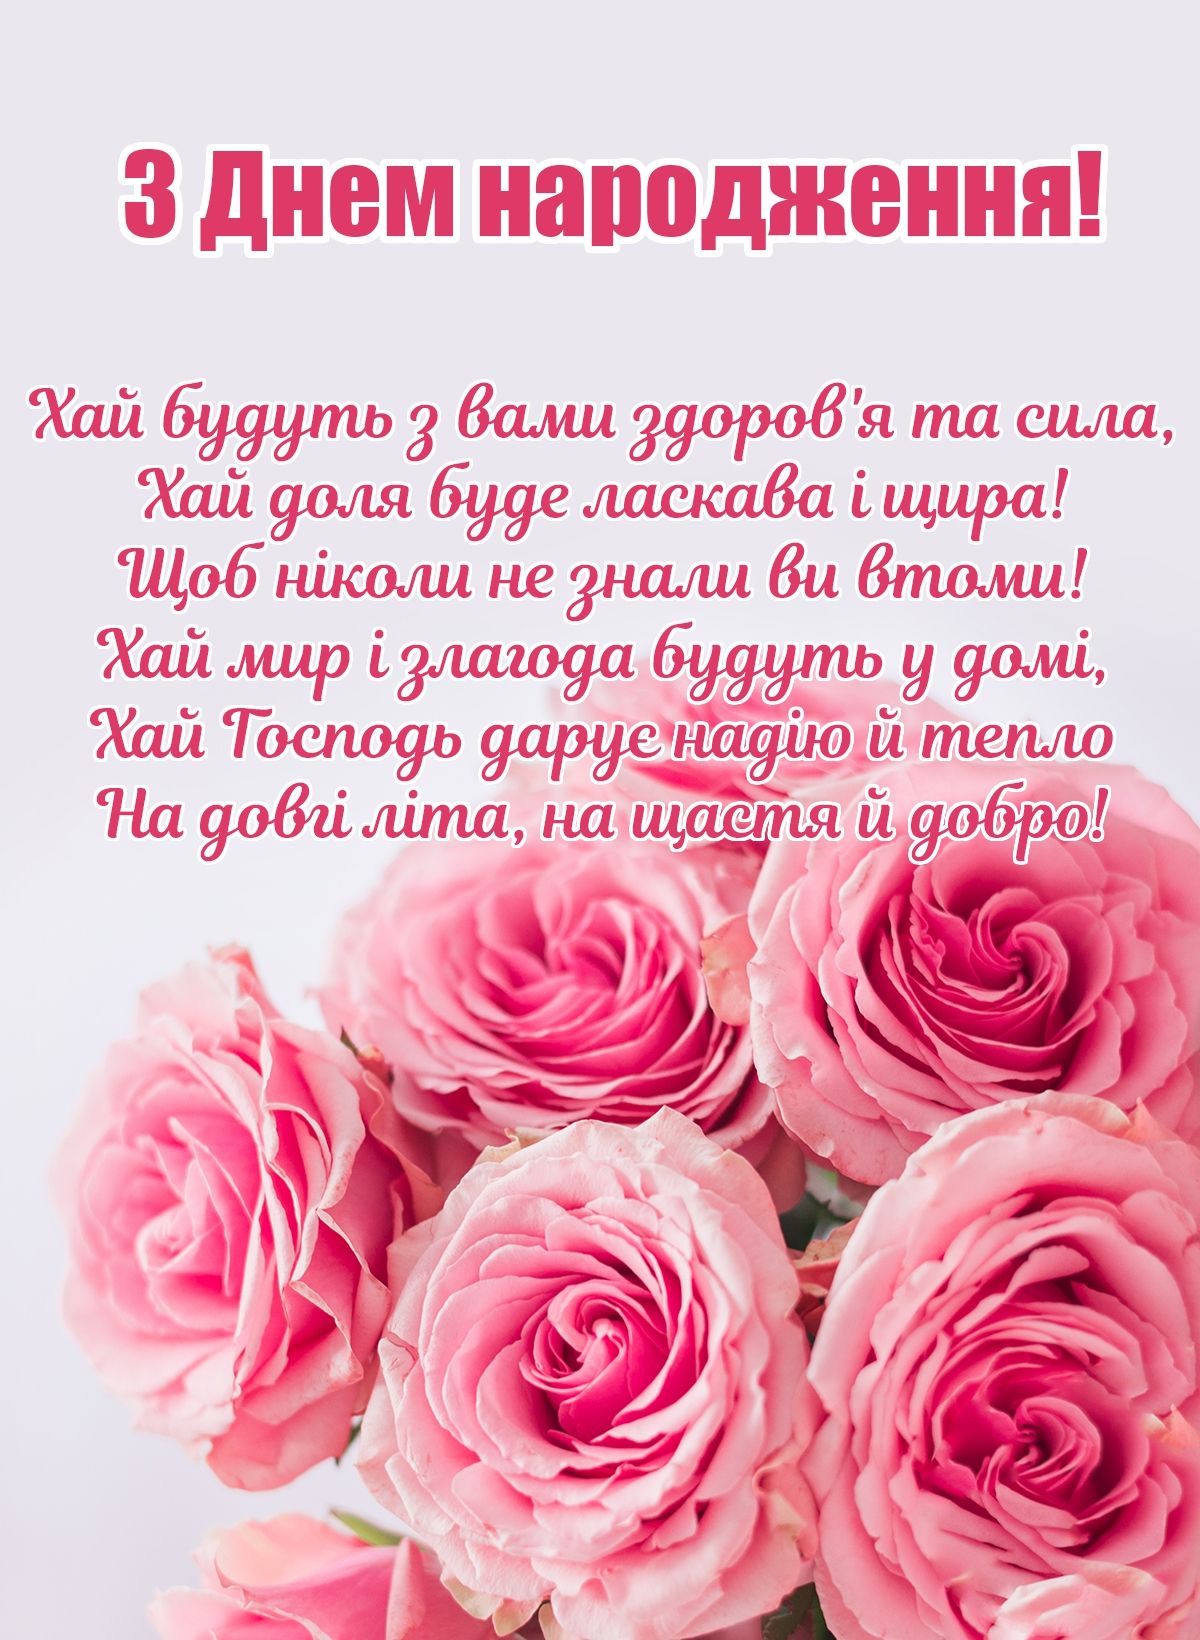 Привітання з днем народження похресниці українською мовою
